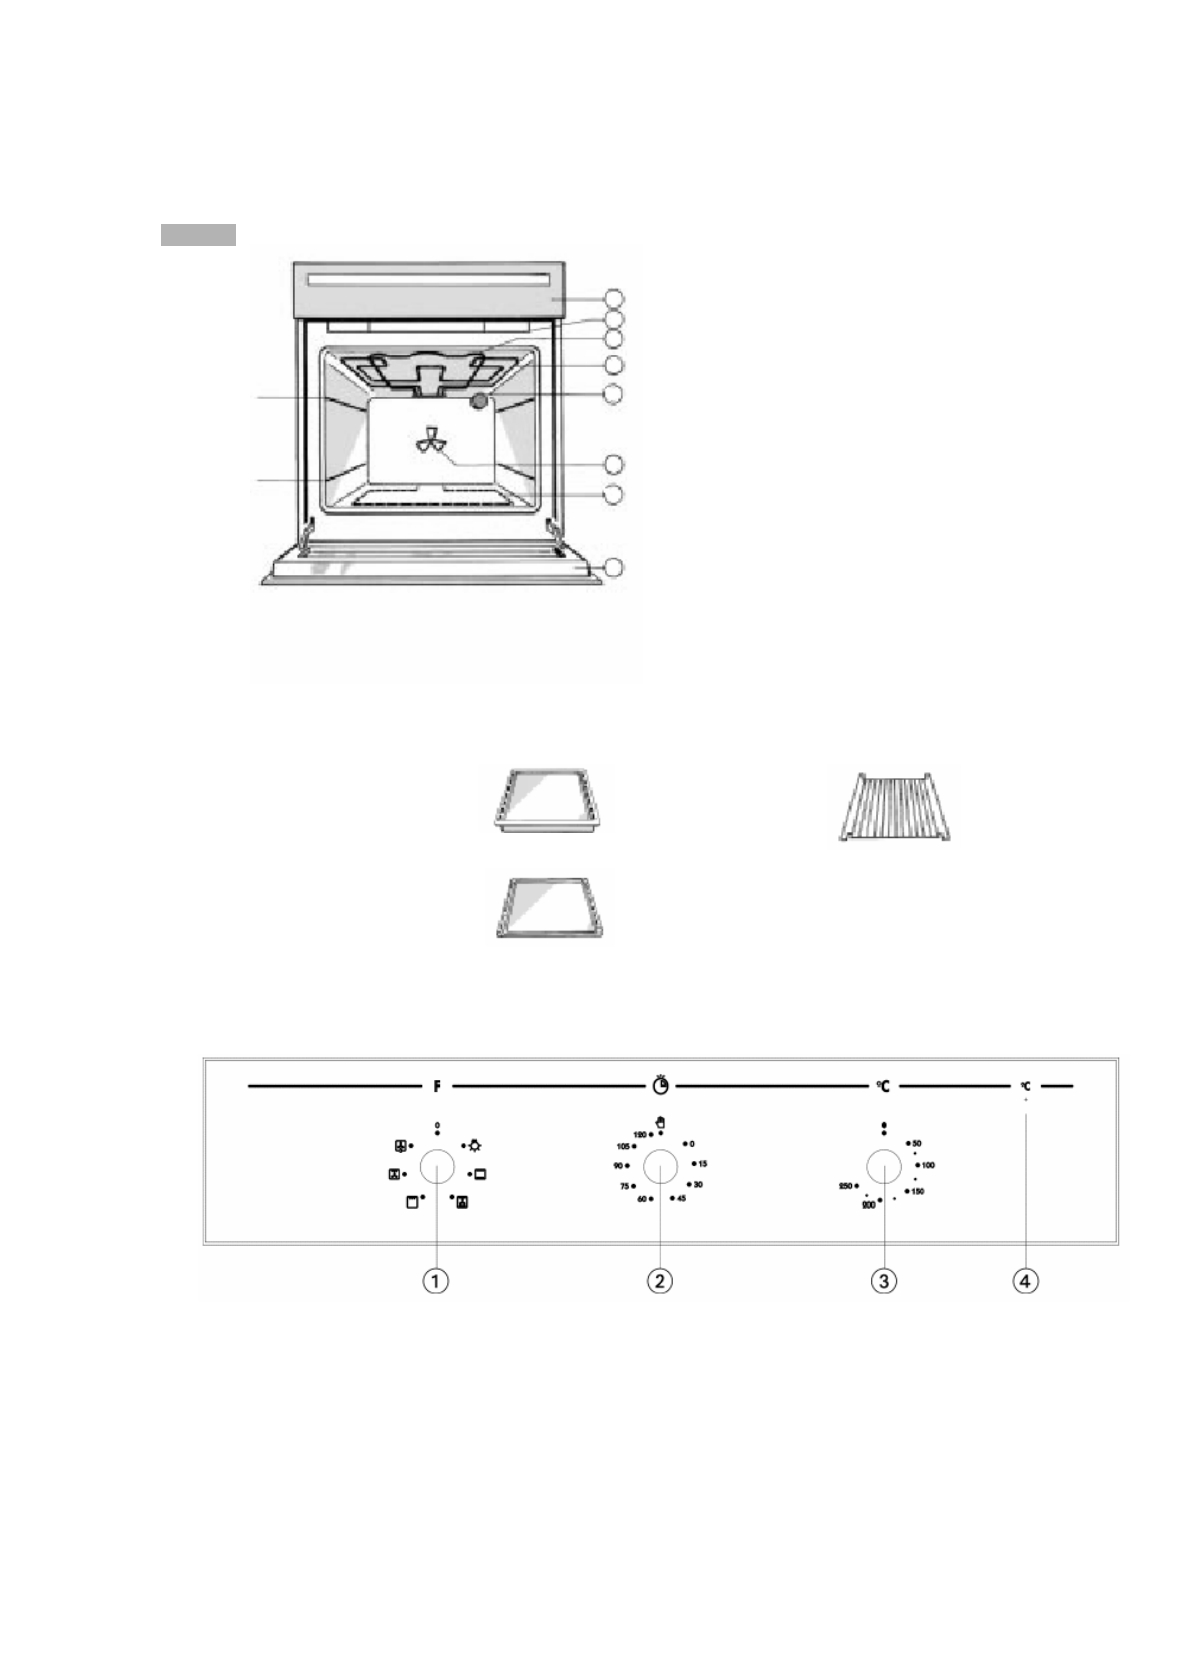 Духовой шкаф электрический встраиваемый вирпул инструкция по применению